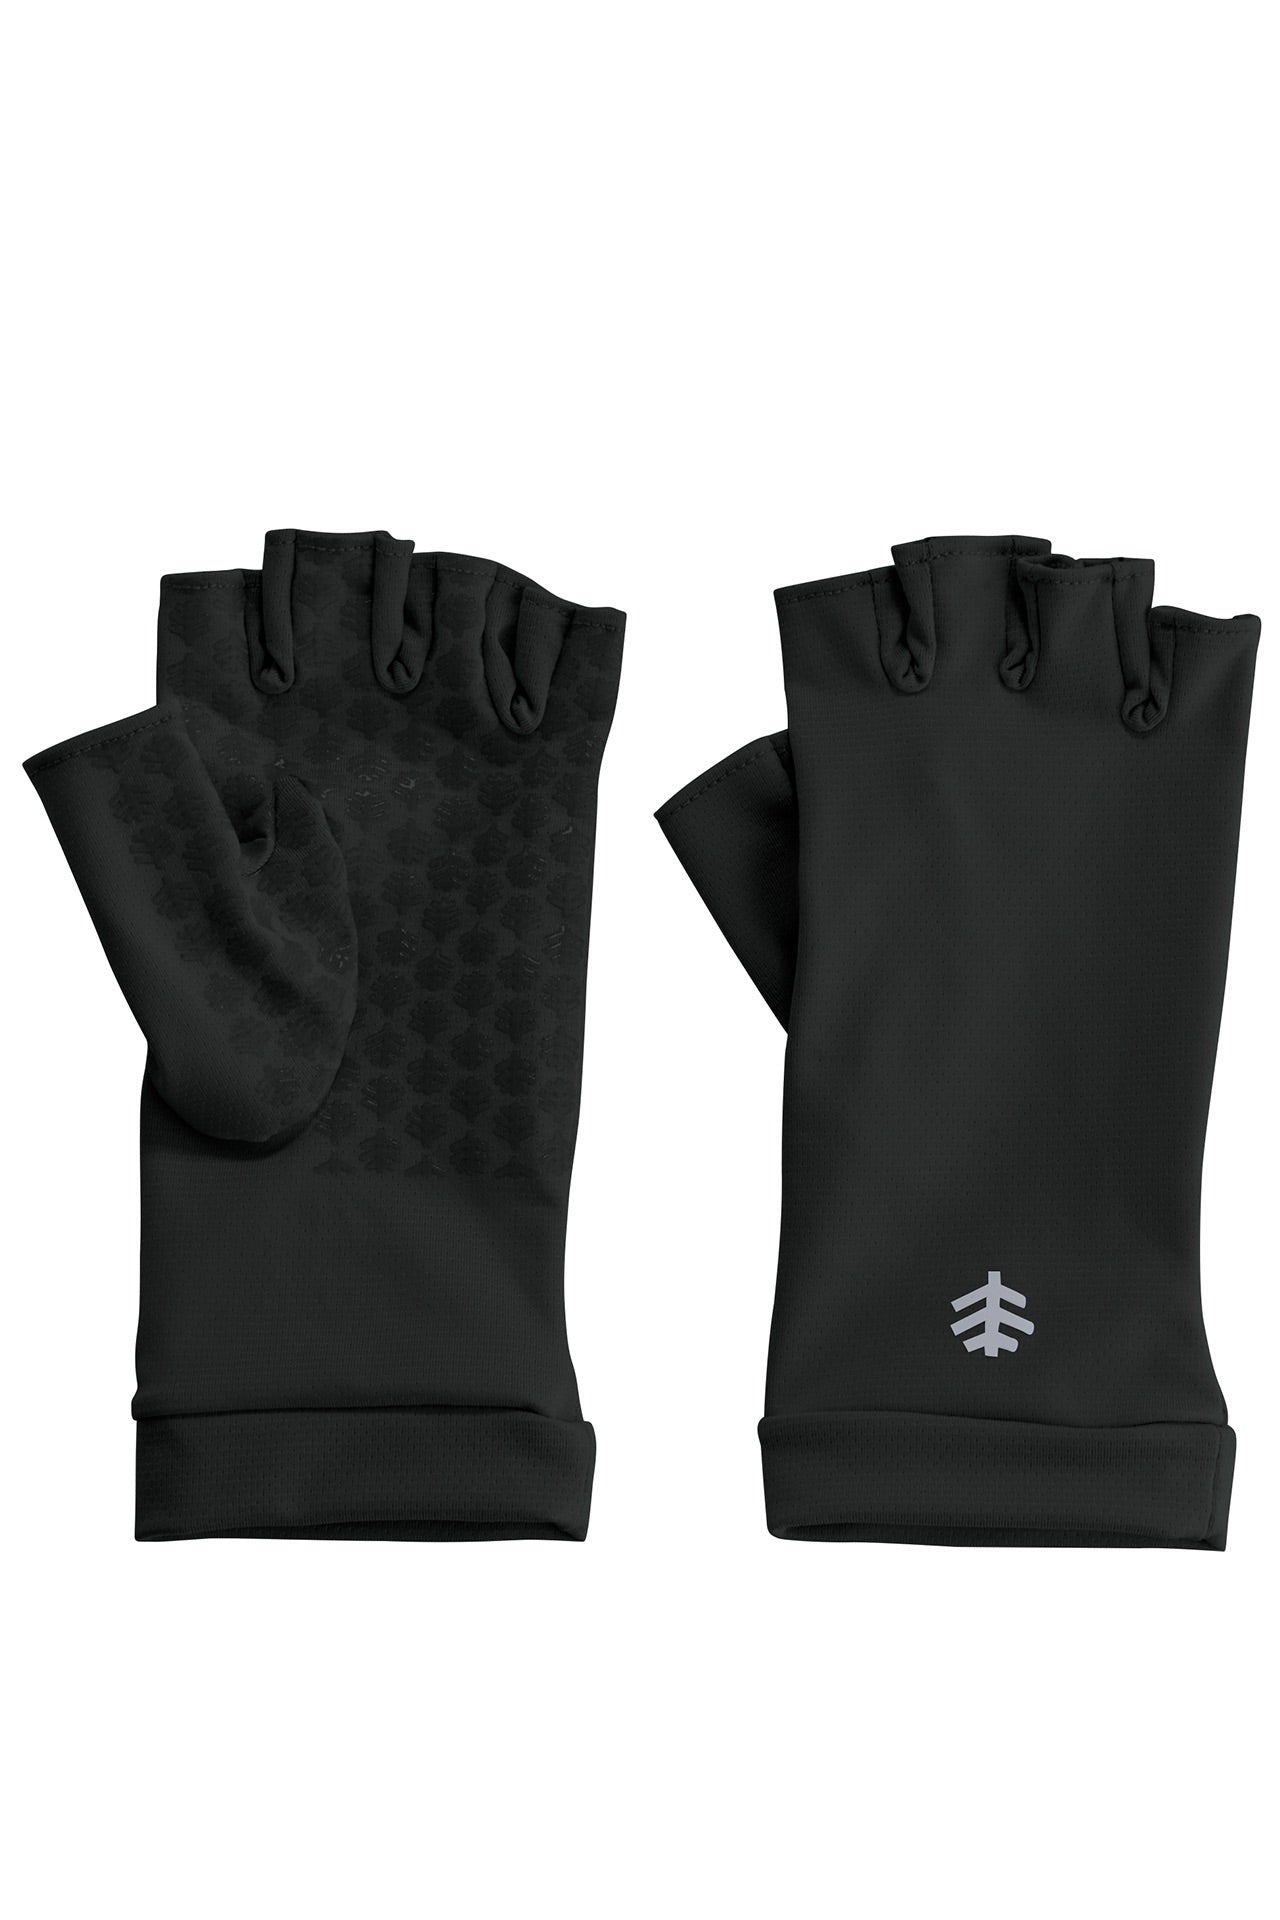 Buy Drasry UV Protection Fishing Fingerless Gloves Men Women UPF